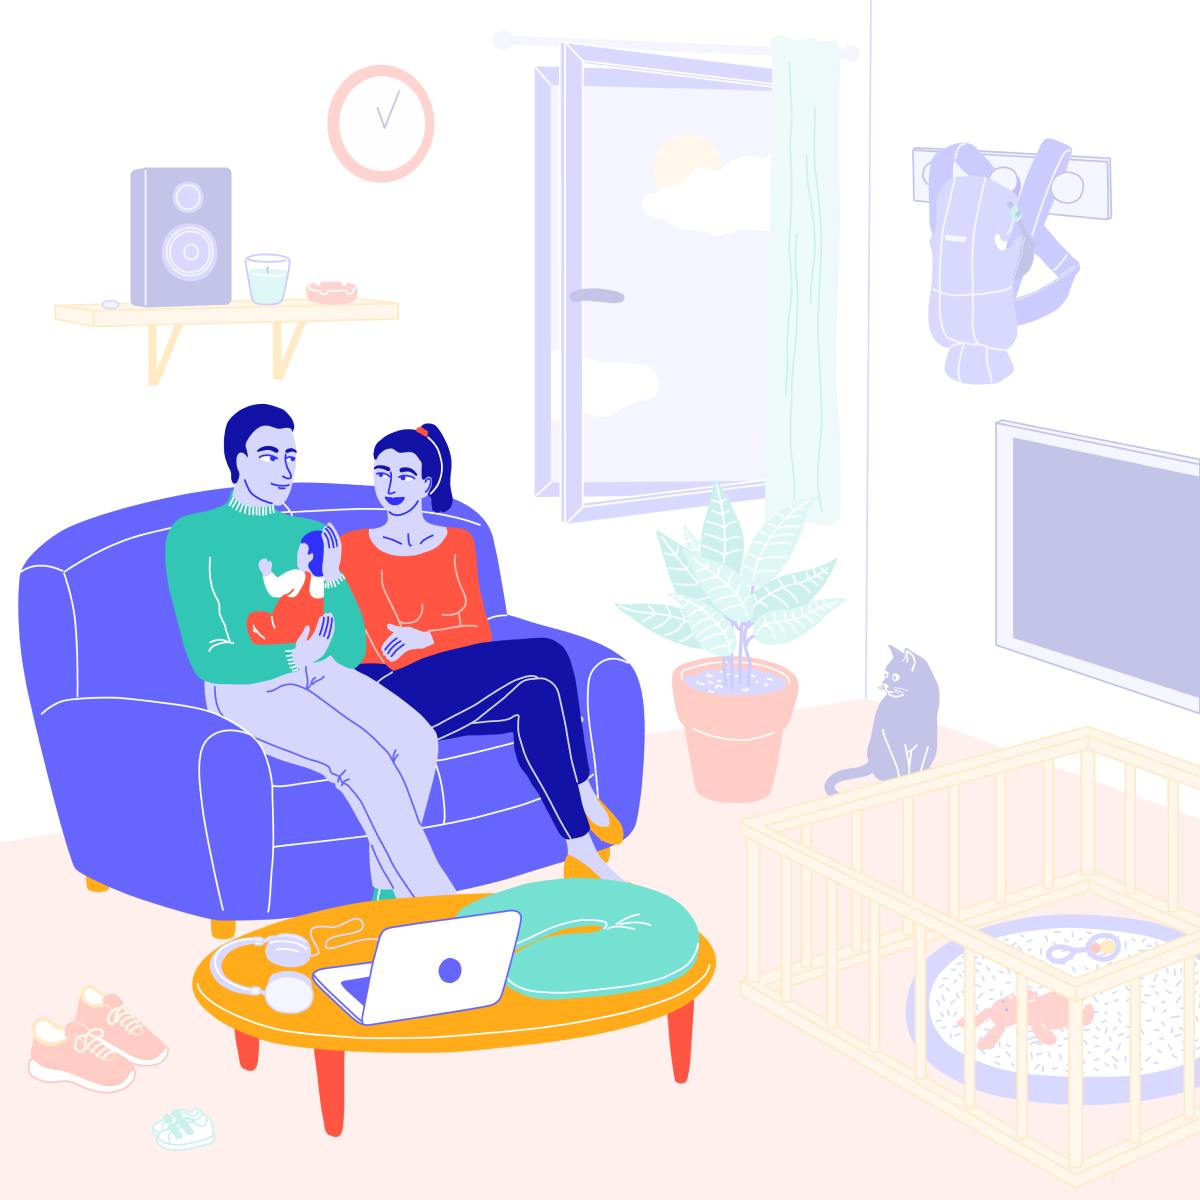 Coussin, canapé, ordinateur, parents et enfant